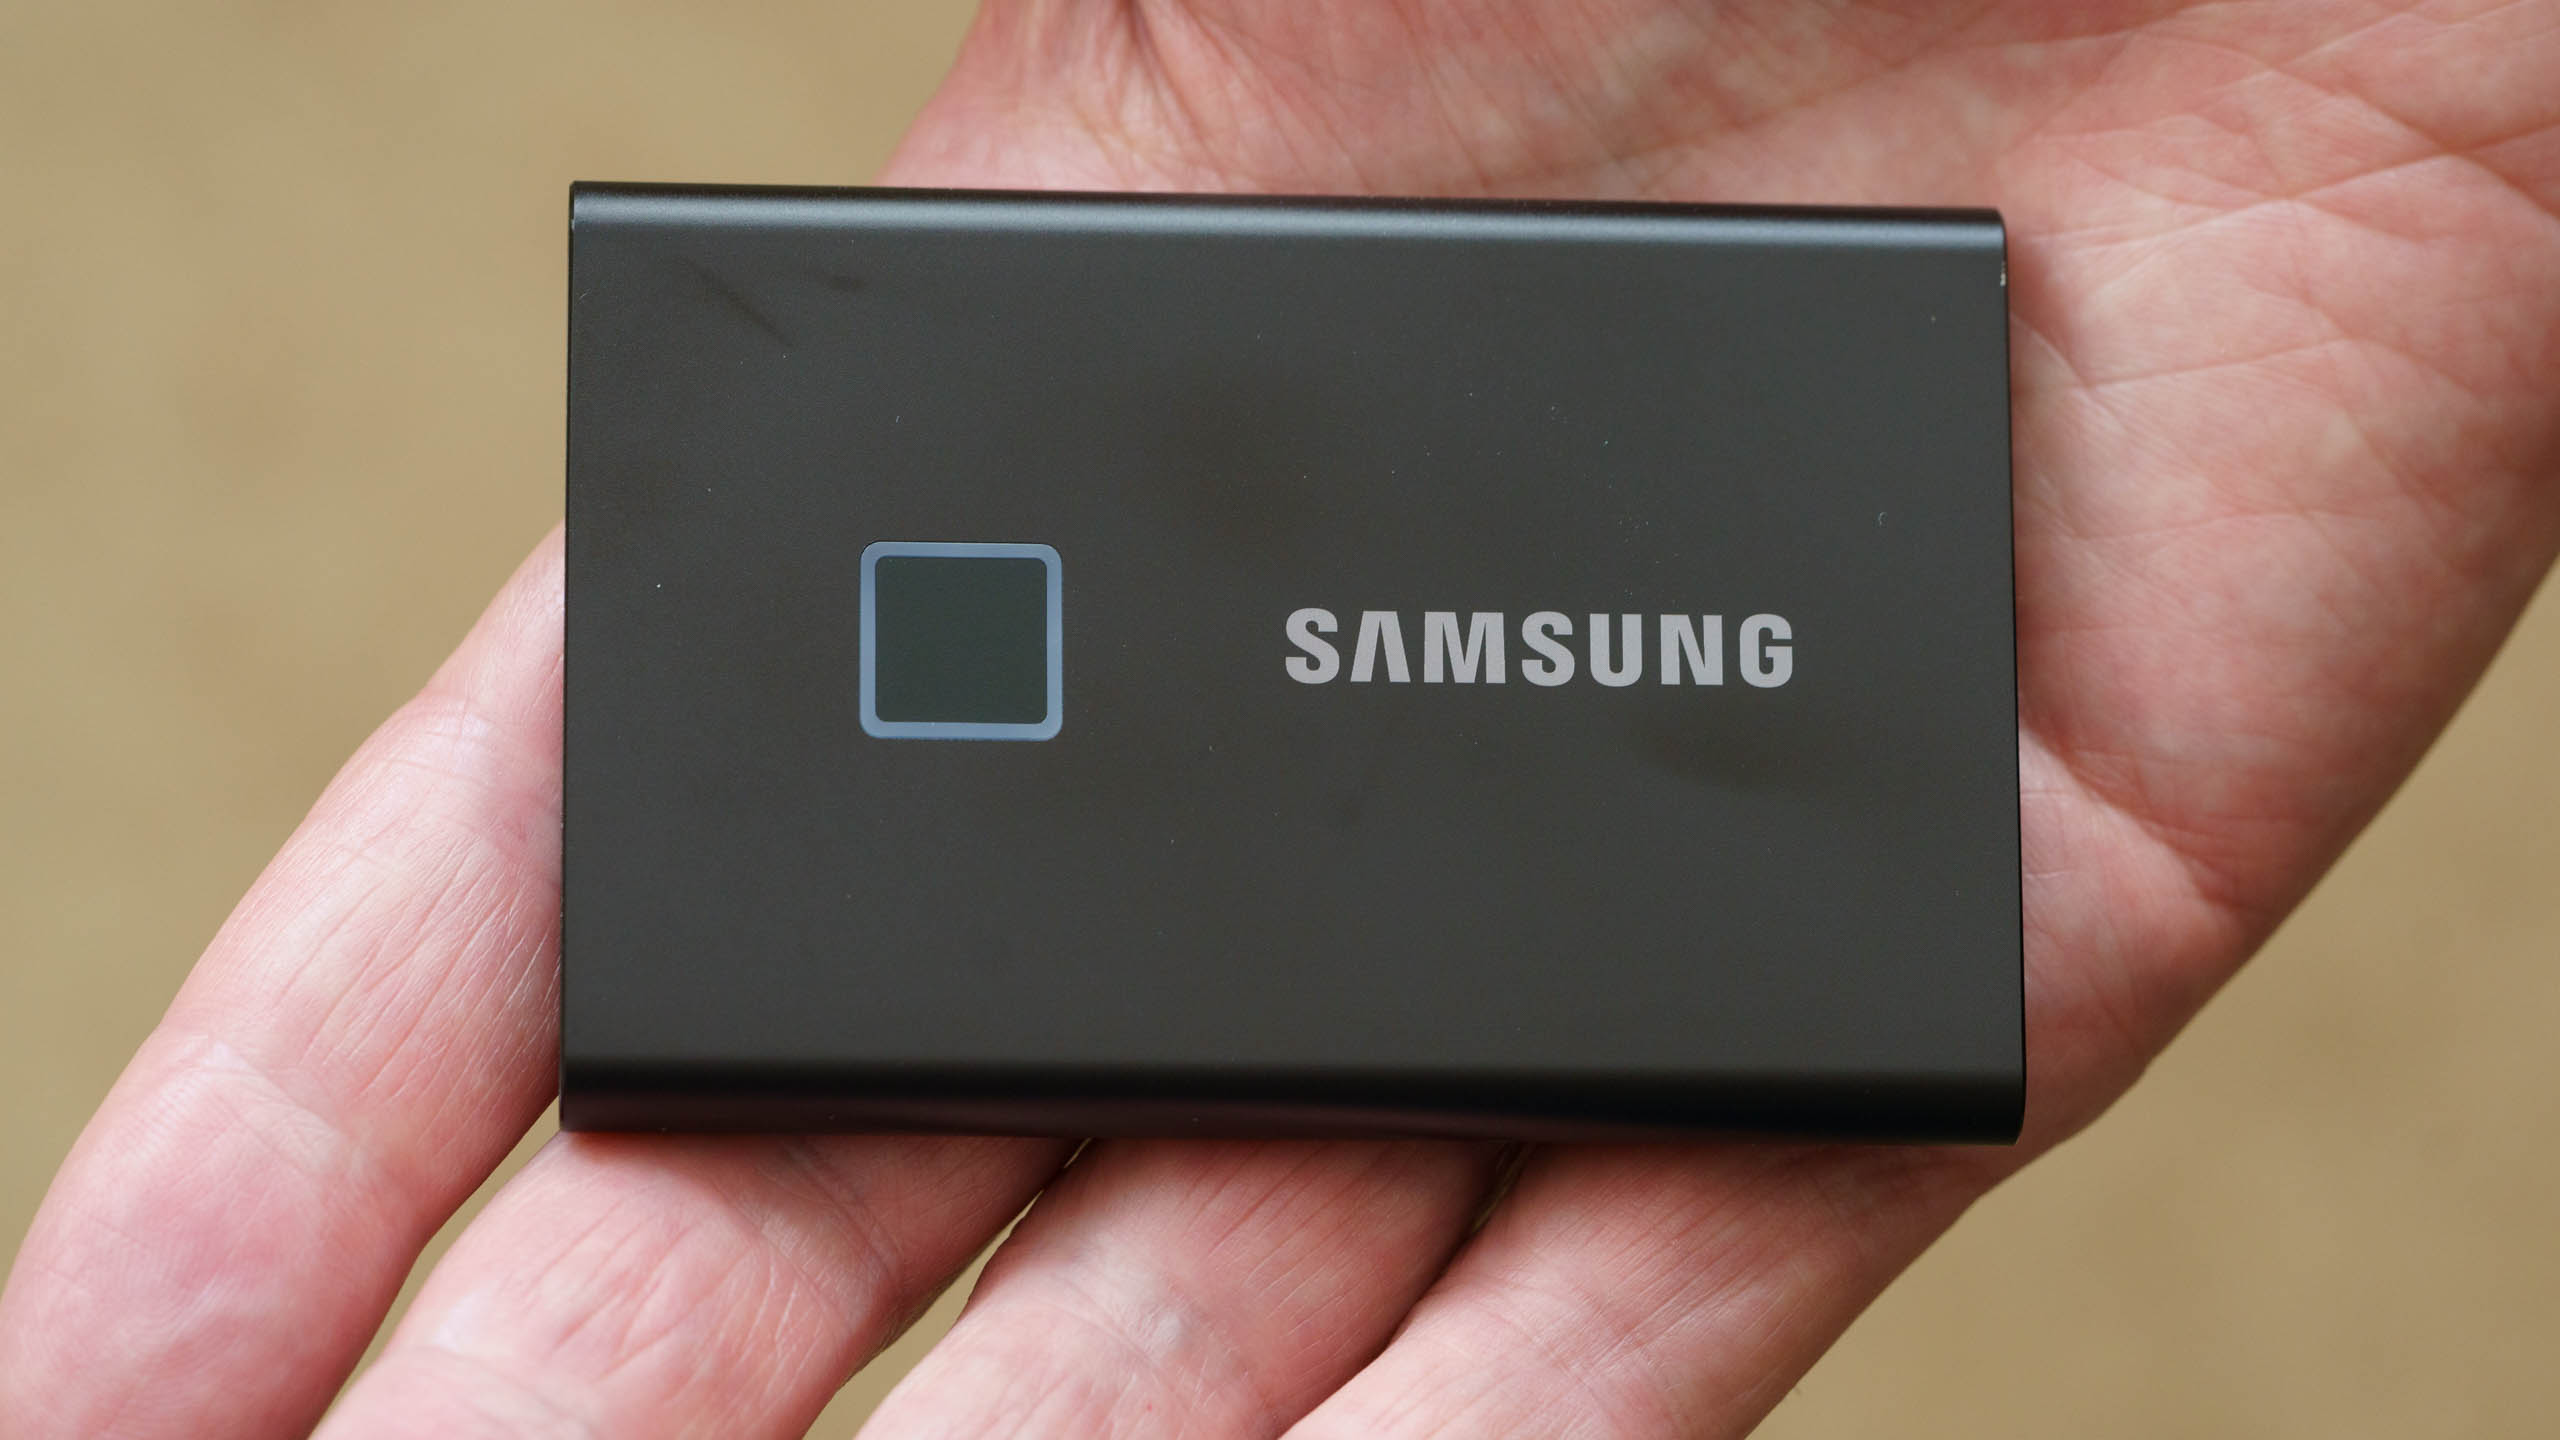 SSD externe Samsung T7 Touch - 1 To - Zwart